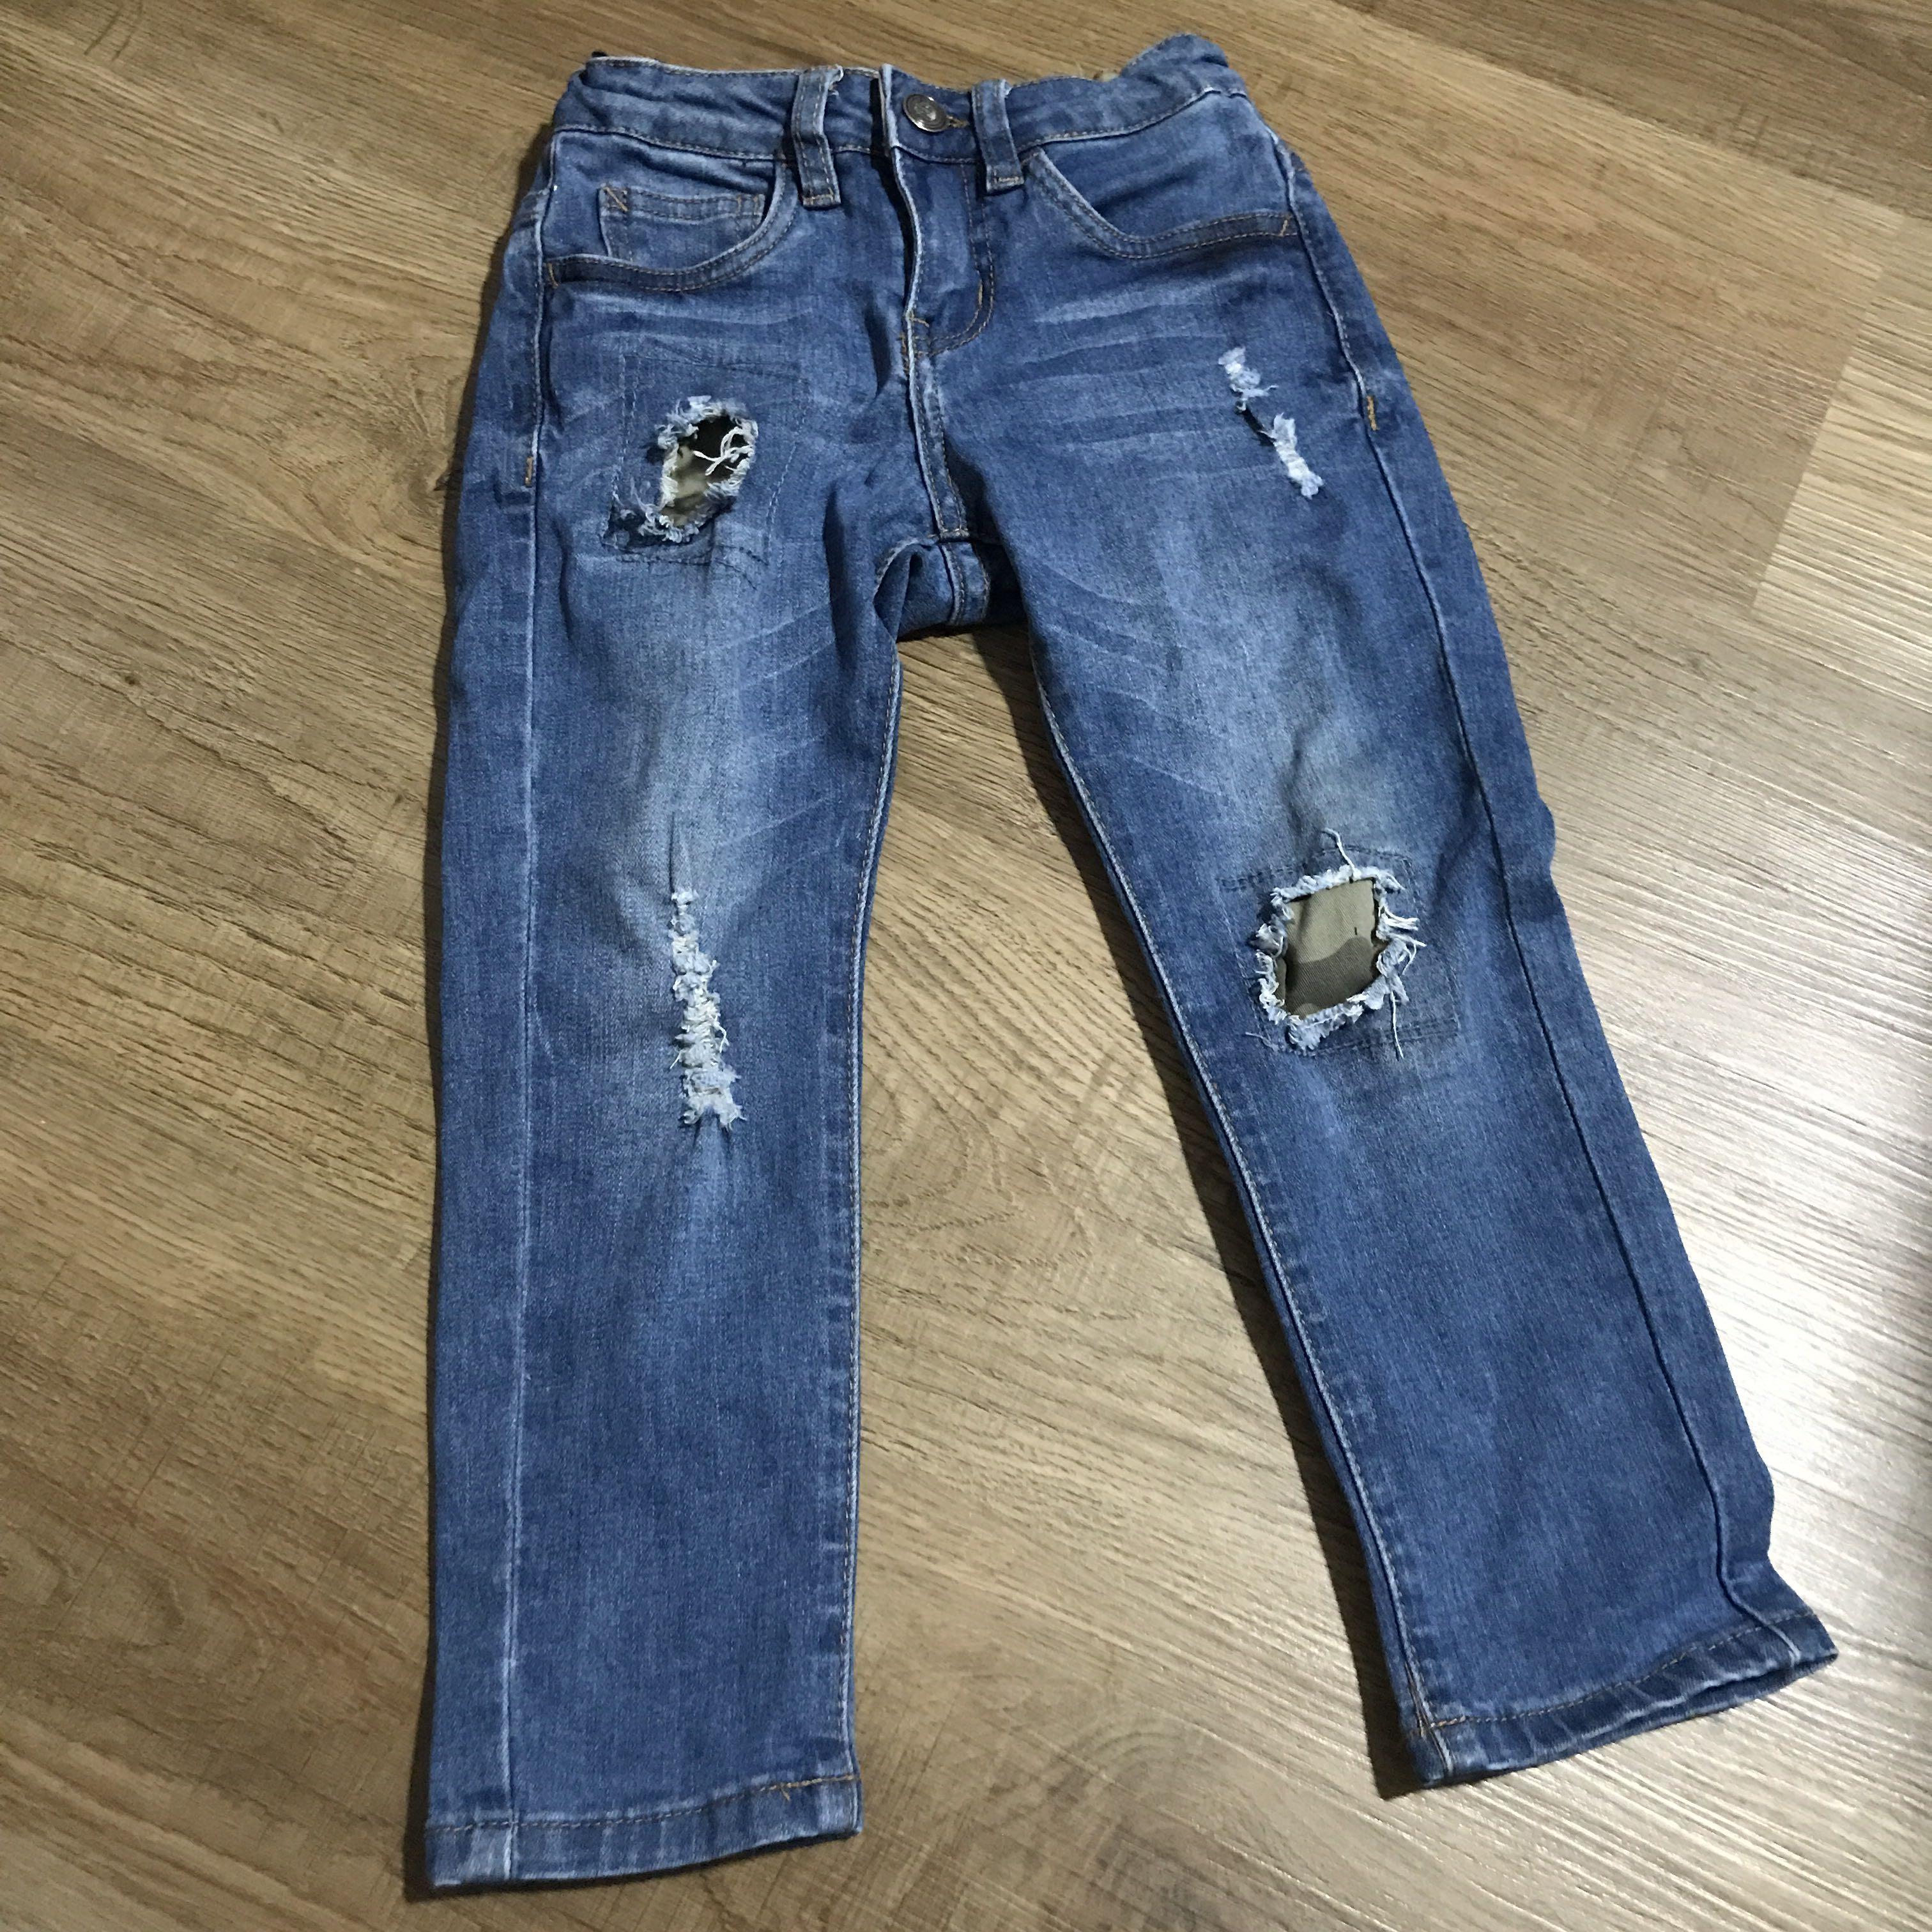 authentic boy jeans